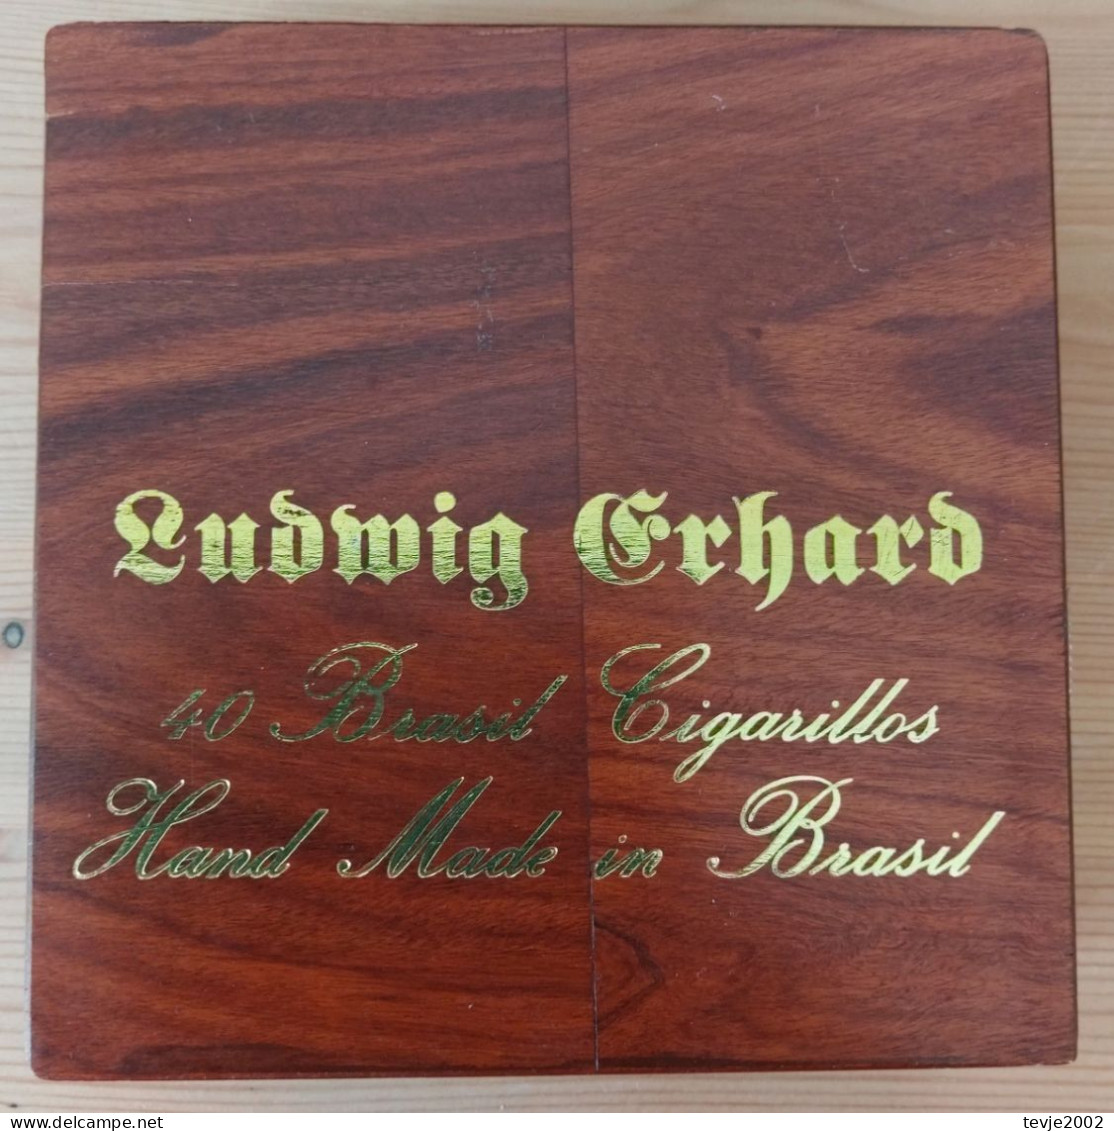 Zigarrenkiste - Ludwig Erhard - Hand Made In Brasil - Suerdieck - Zigarrenkisten (leer)